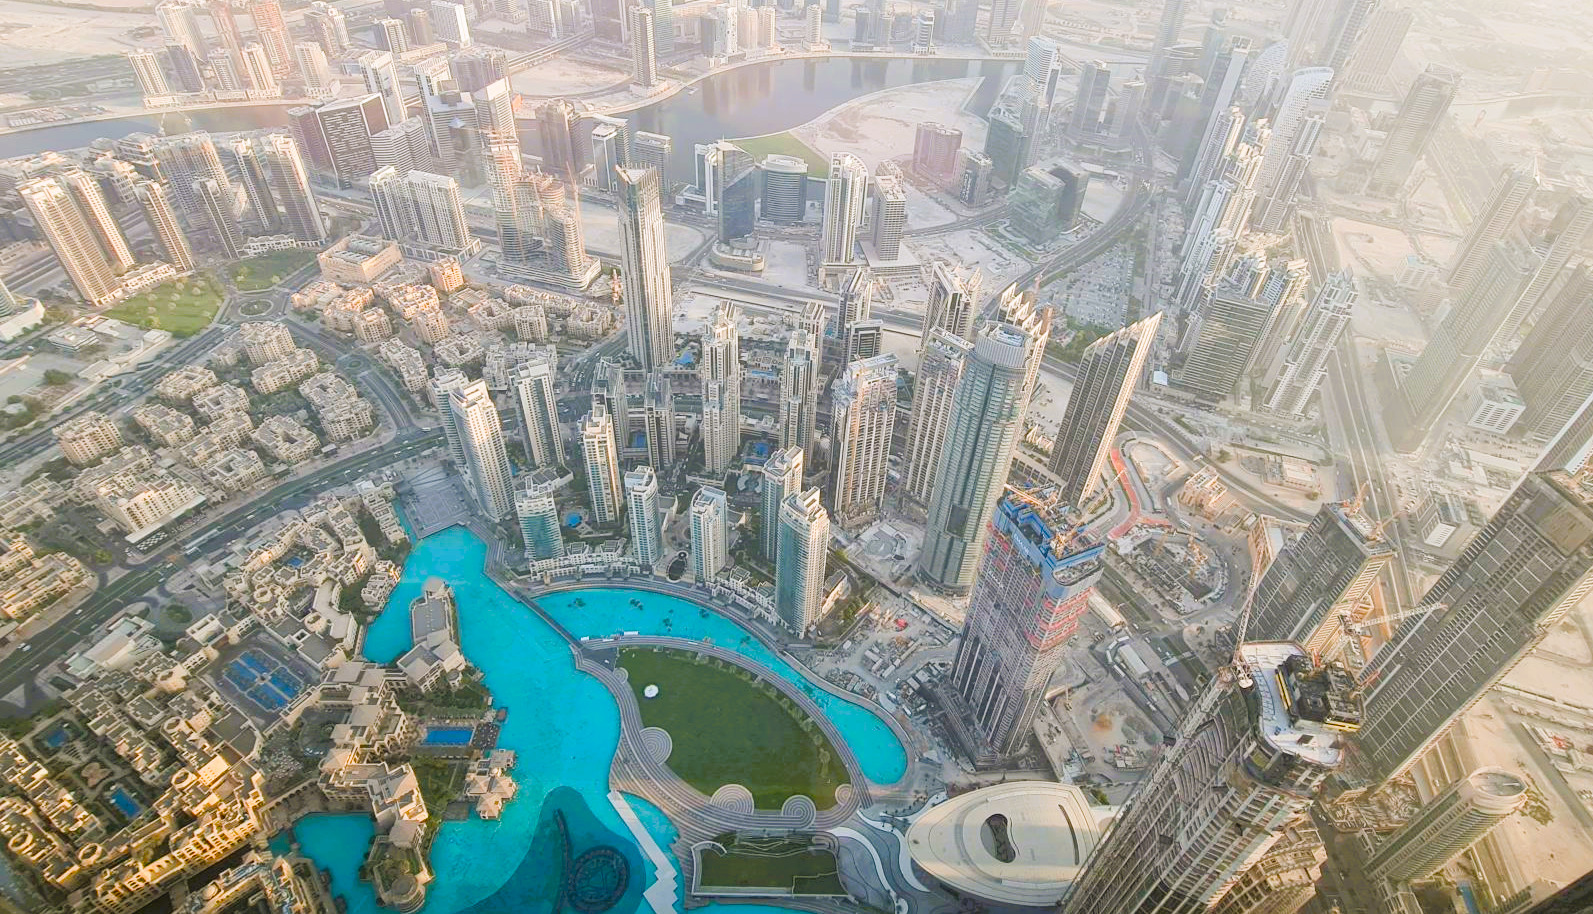 Dubai Innenstadt weißt die größte Headhunter dichte in den Emiraten auf